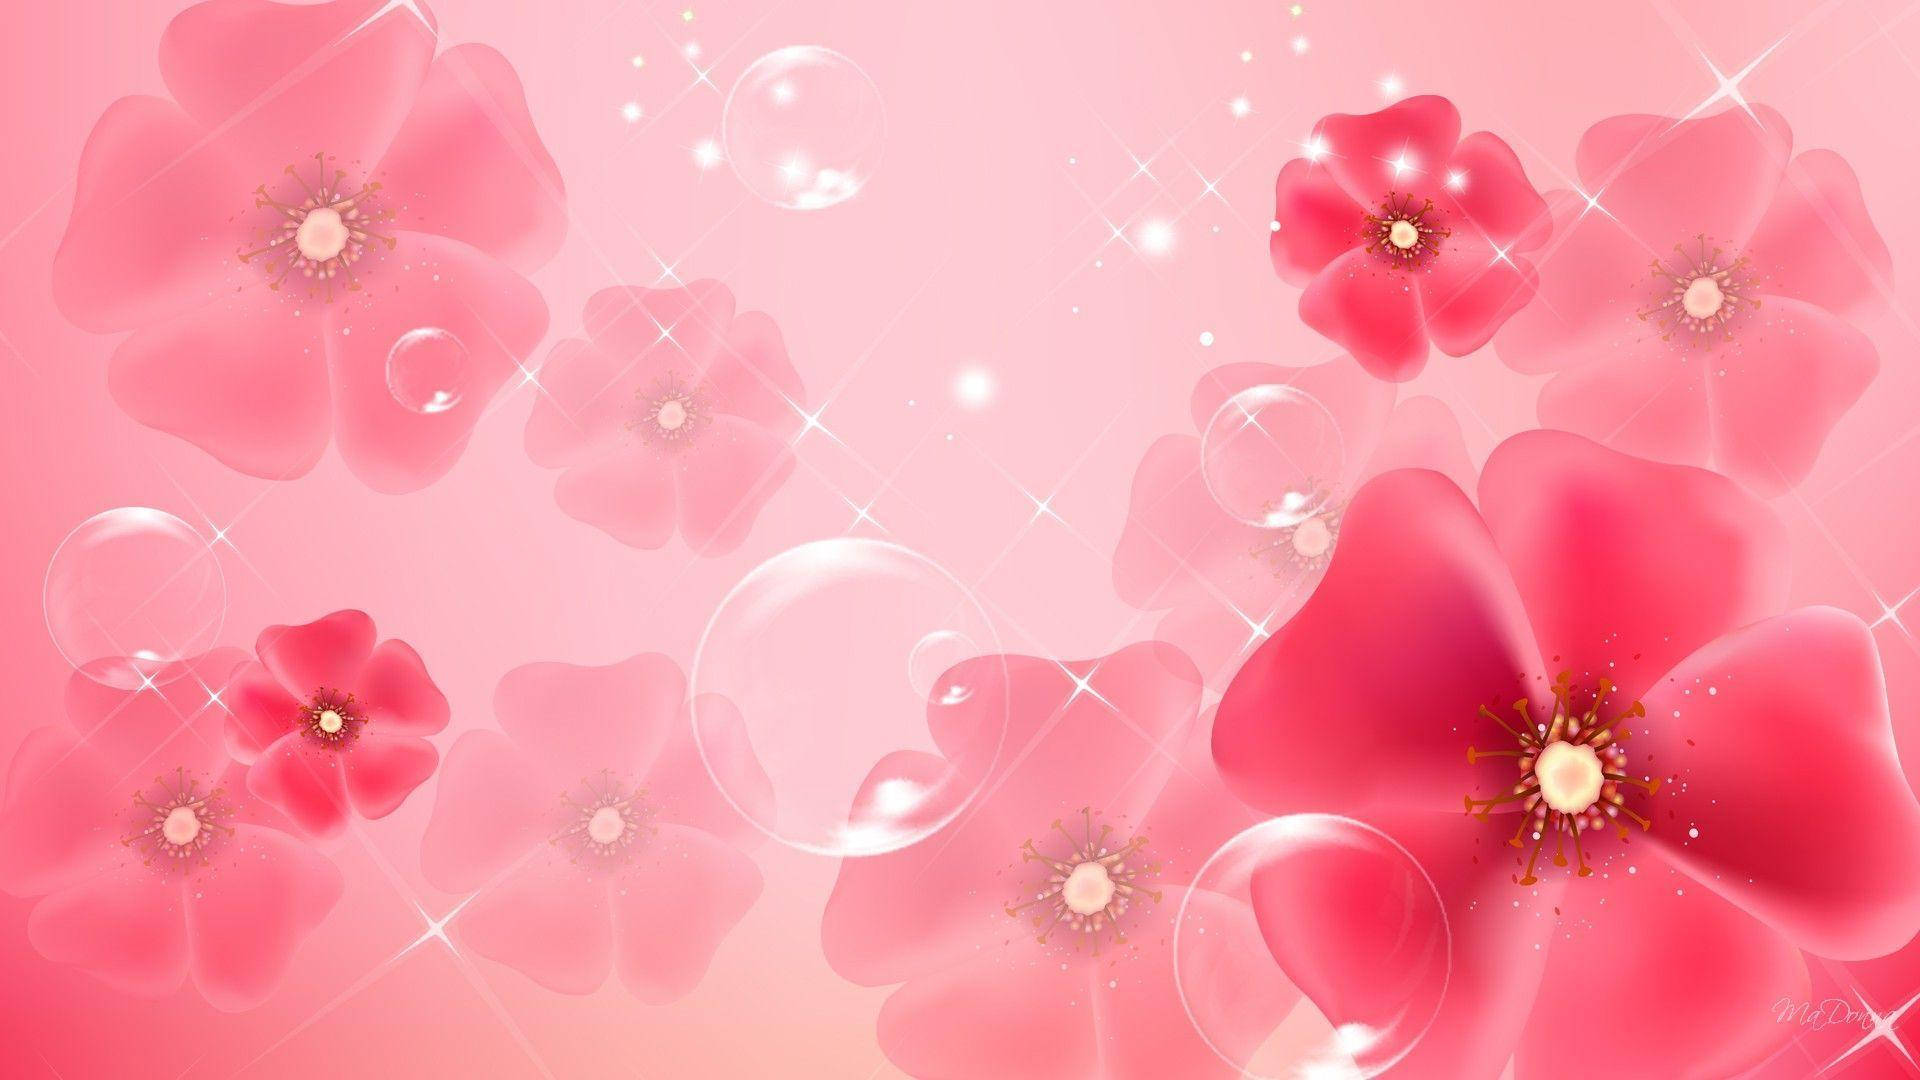 Light Pink Gradient Background by VirusXenon on DeviantArt